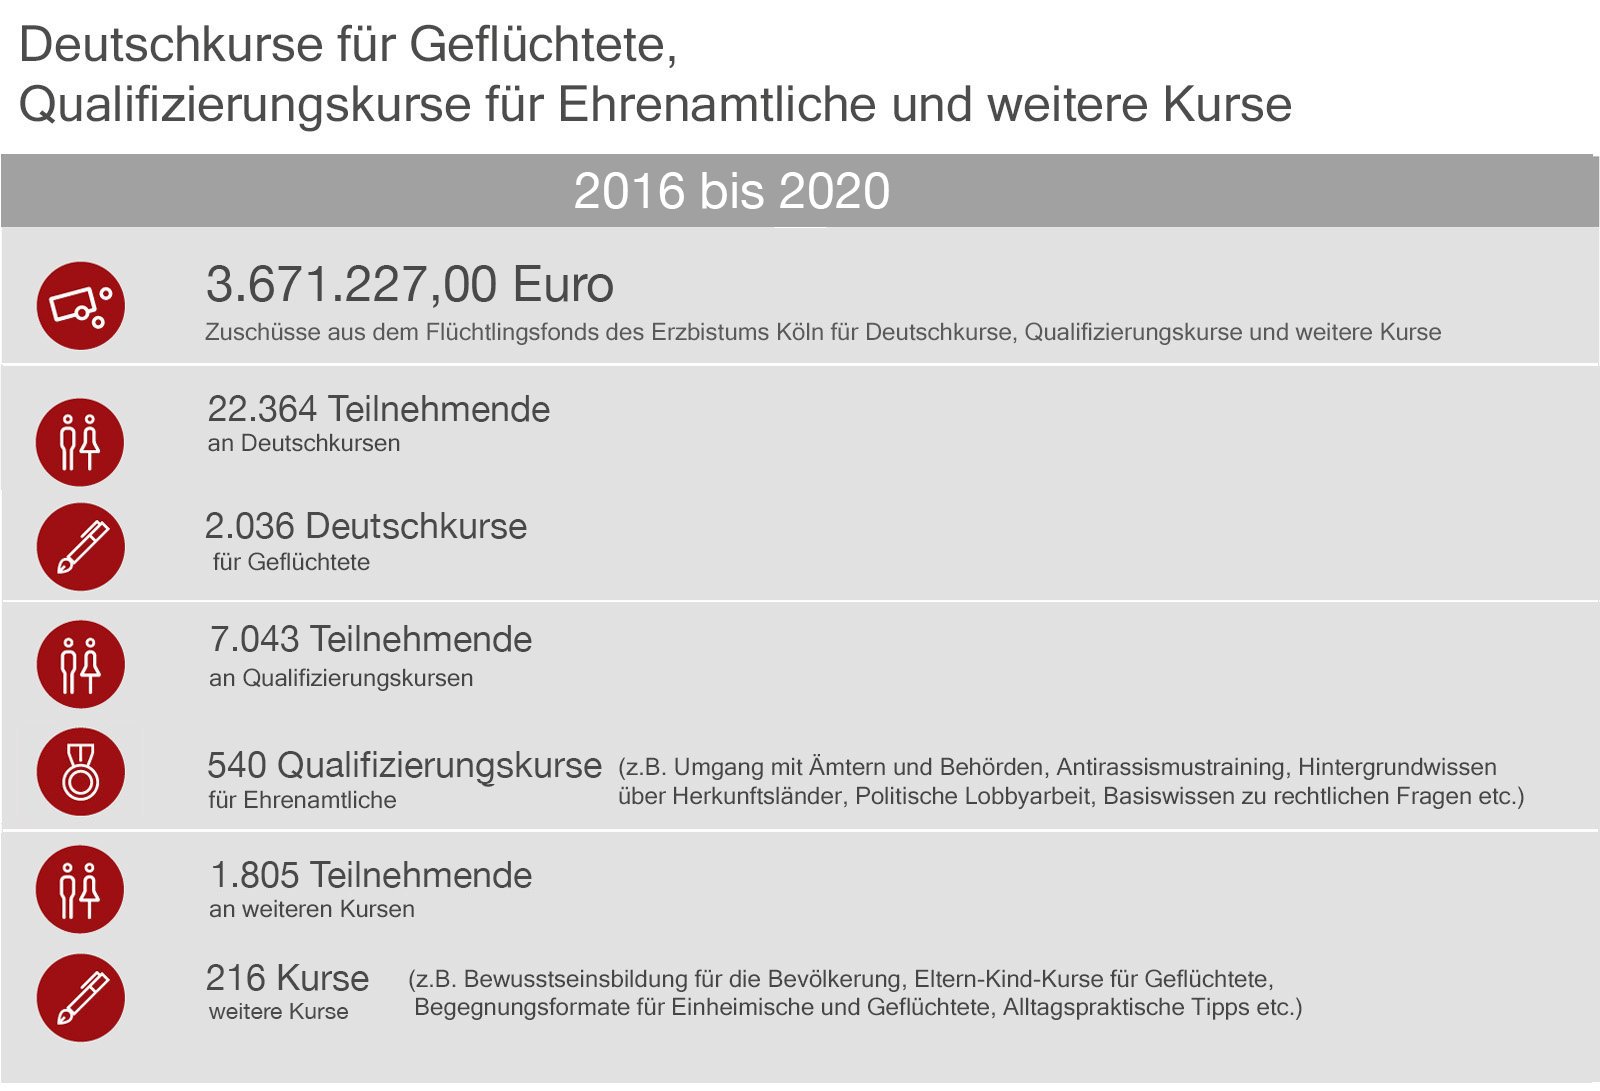 Grafik: Deutschkurse für Flüchtlinge und Qualifizierungskurse für Ehrenamtliche